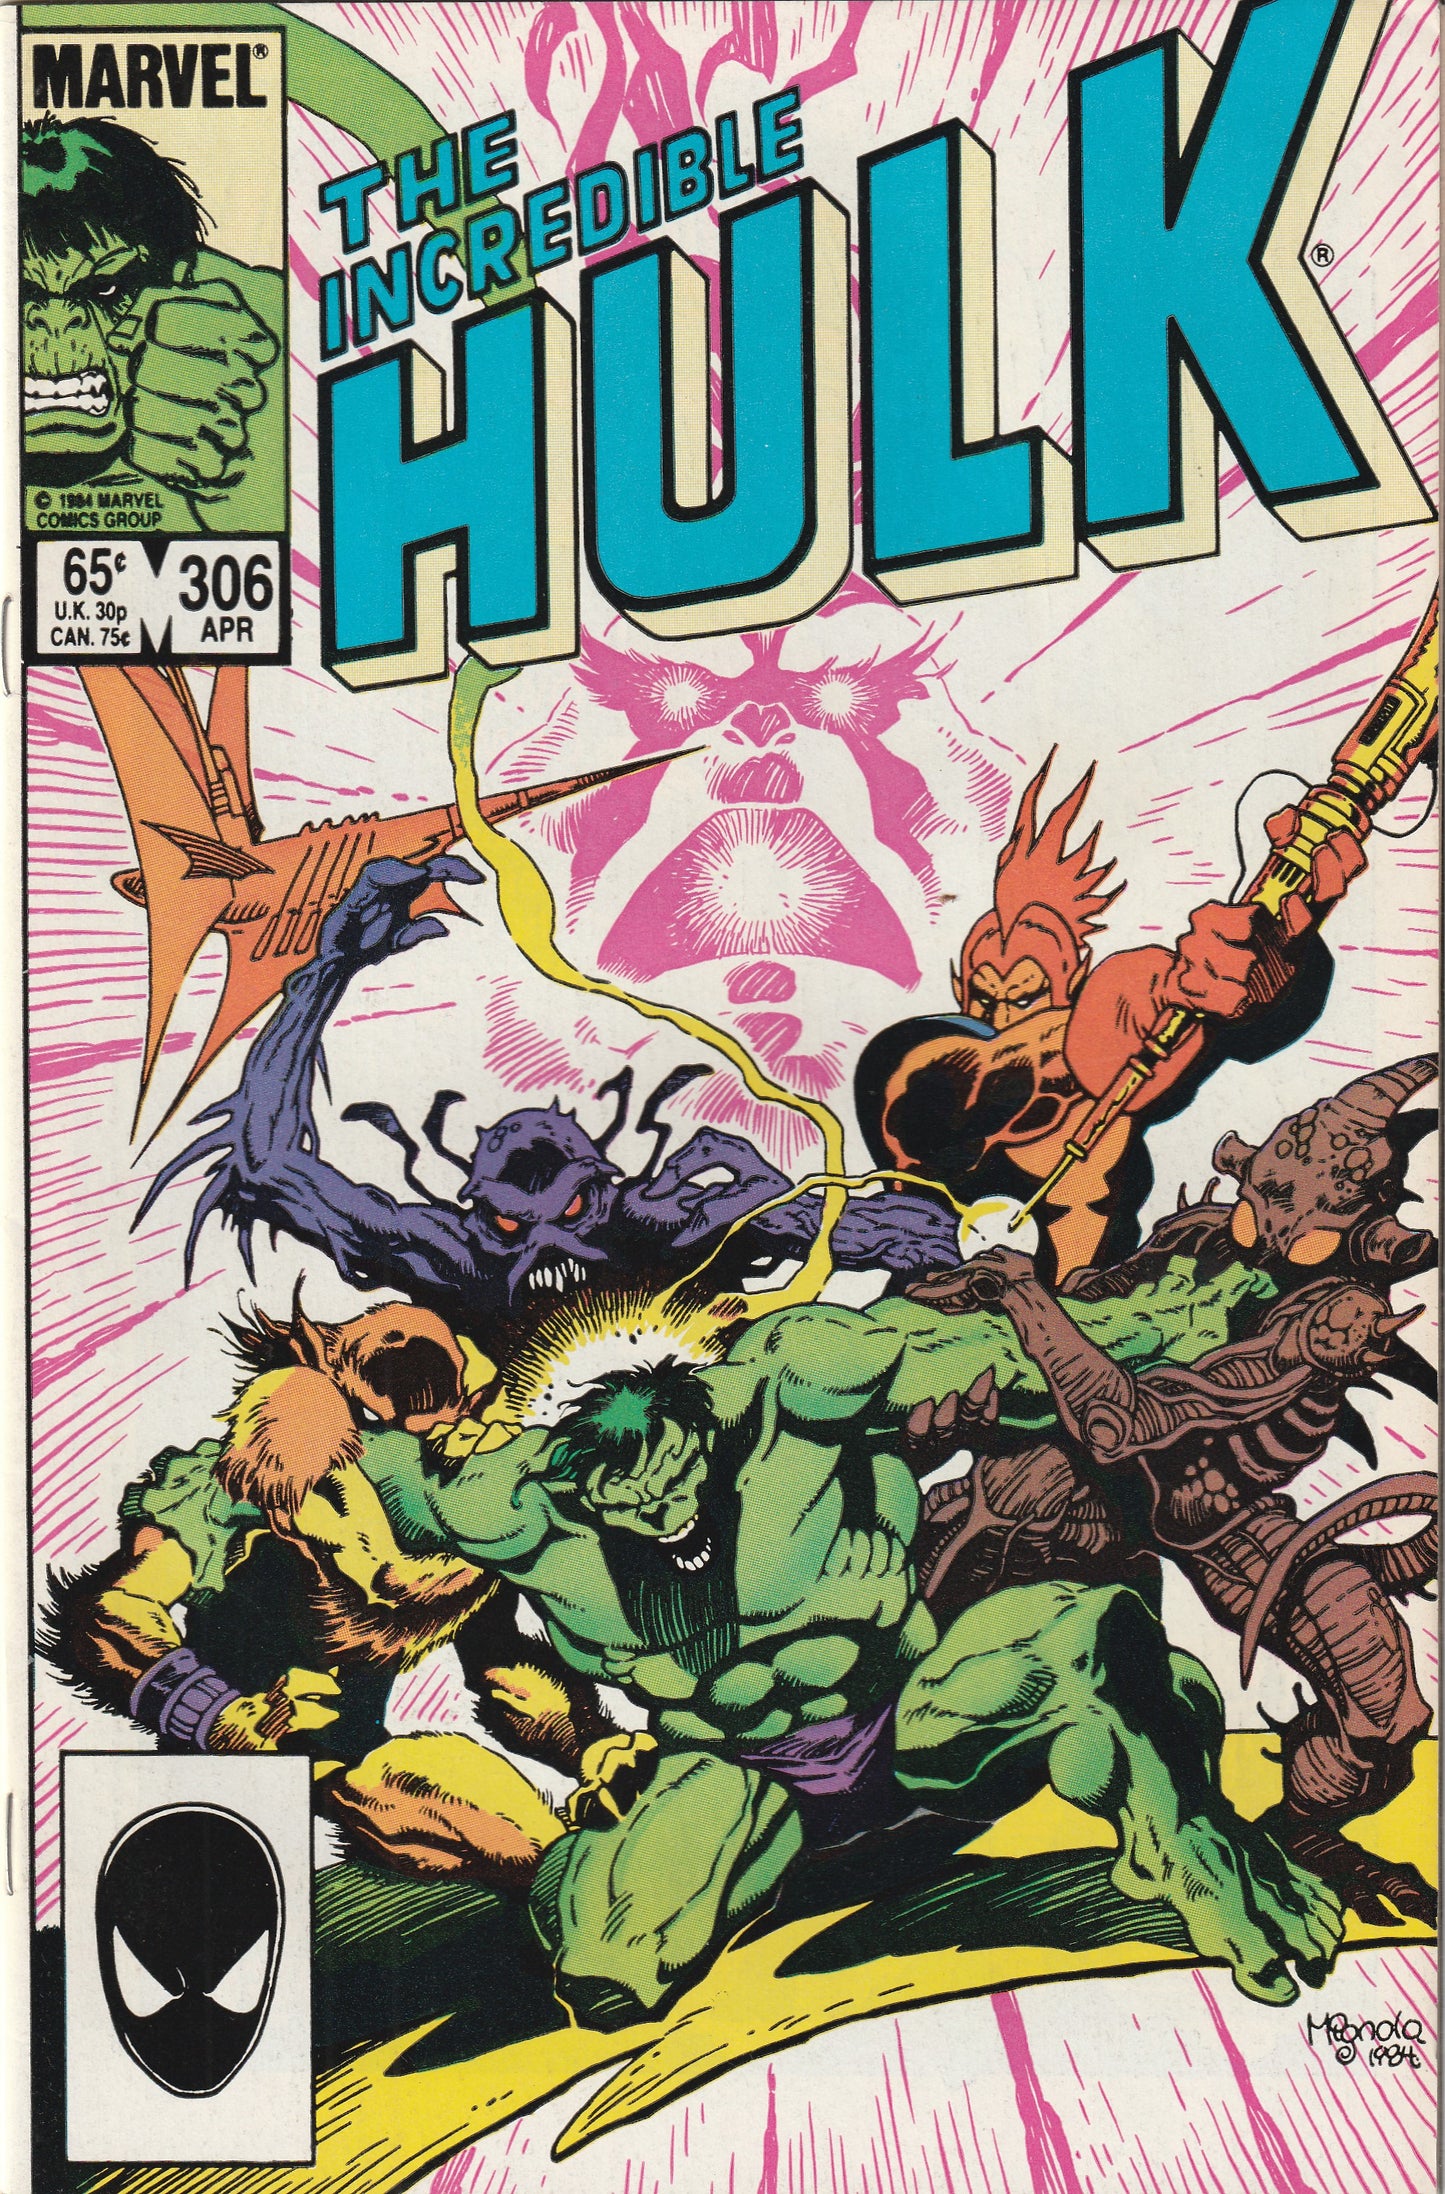 Incredible Hulk #306 (1985)